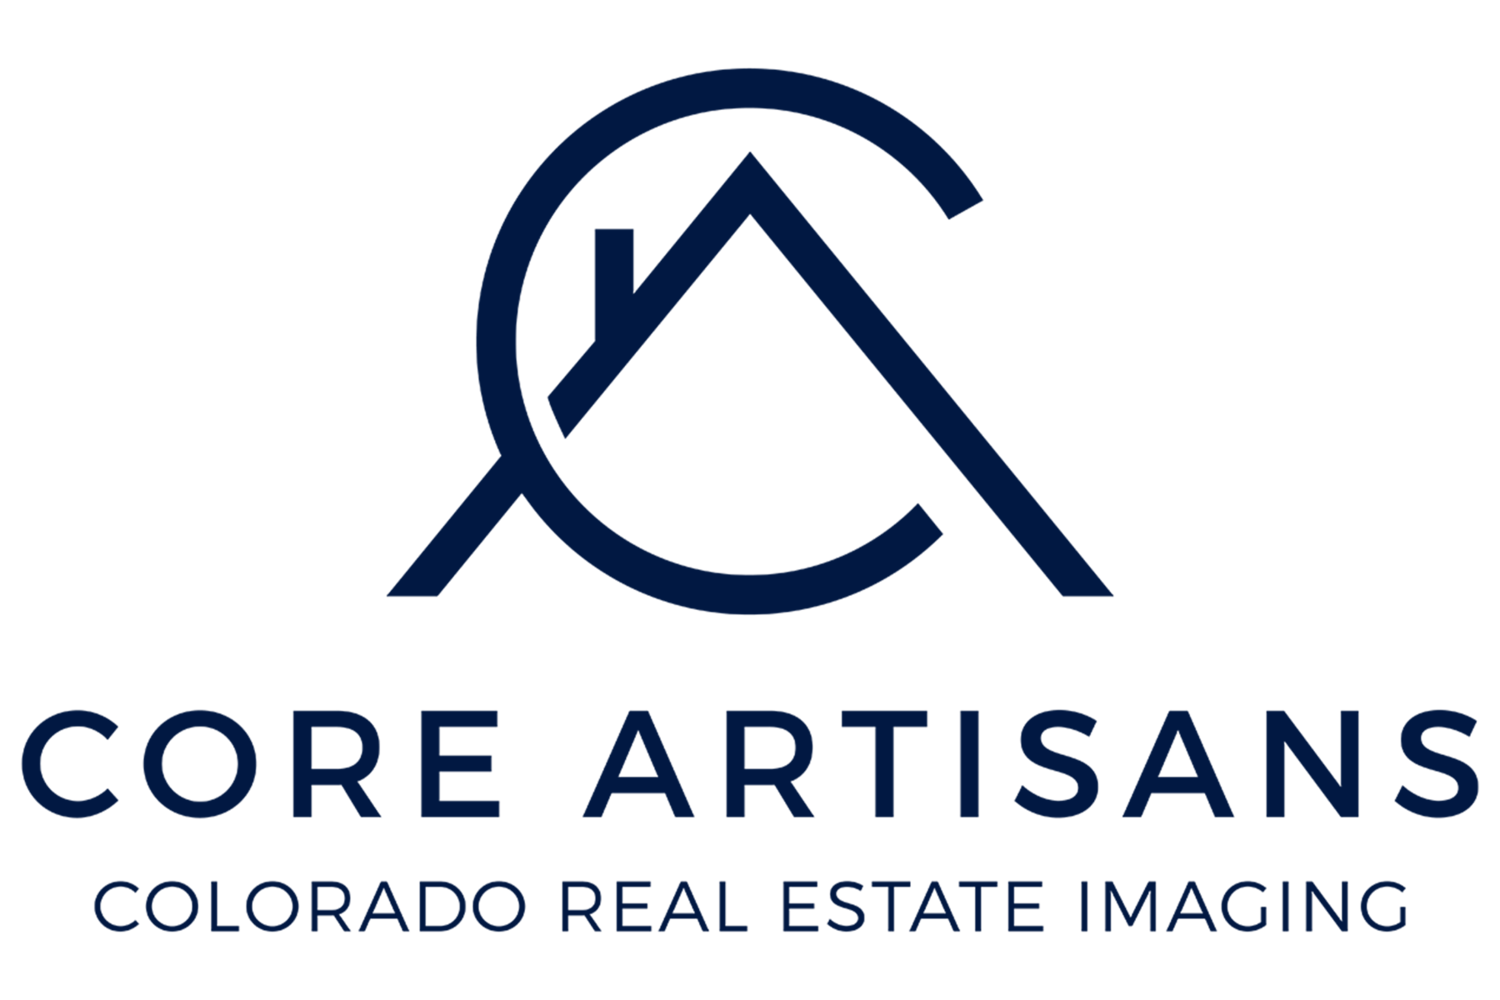 Colorado real estate imaging